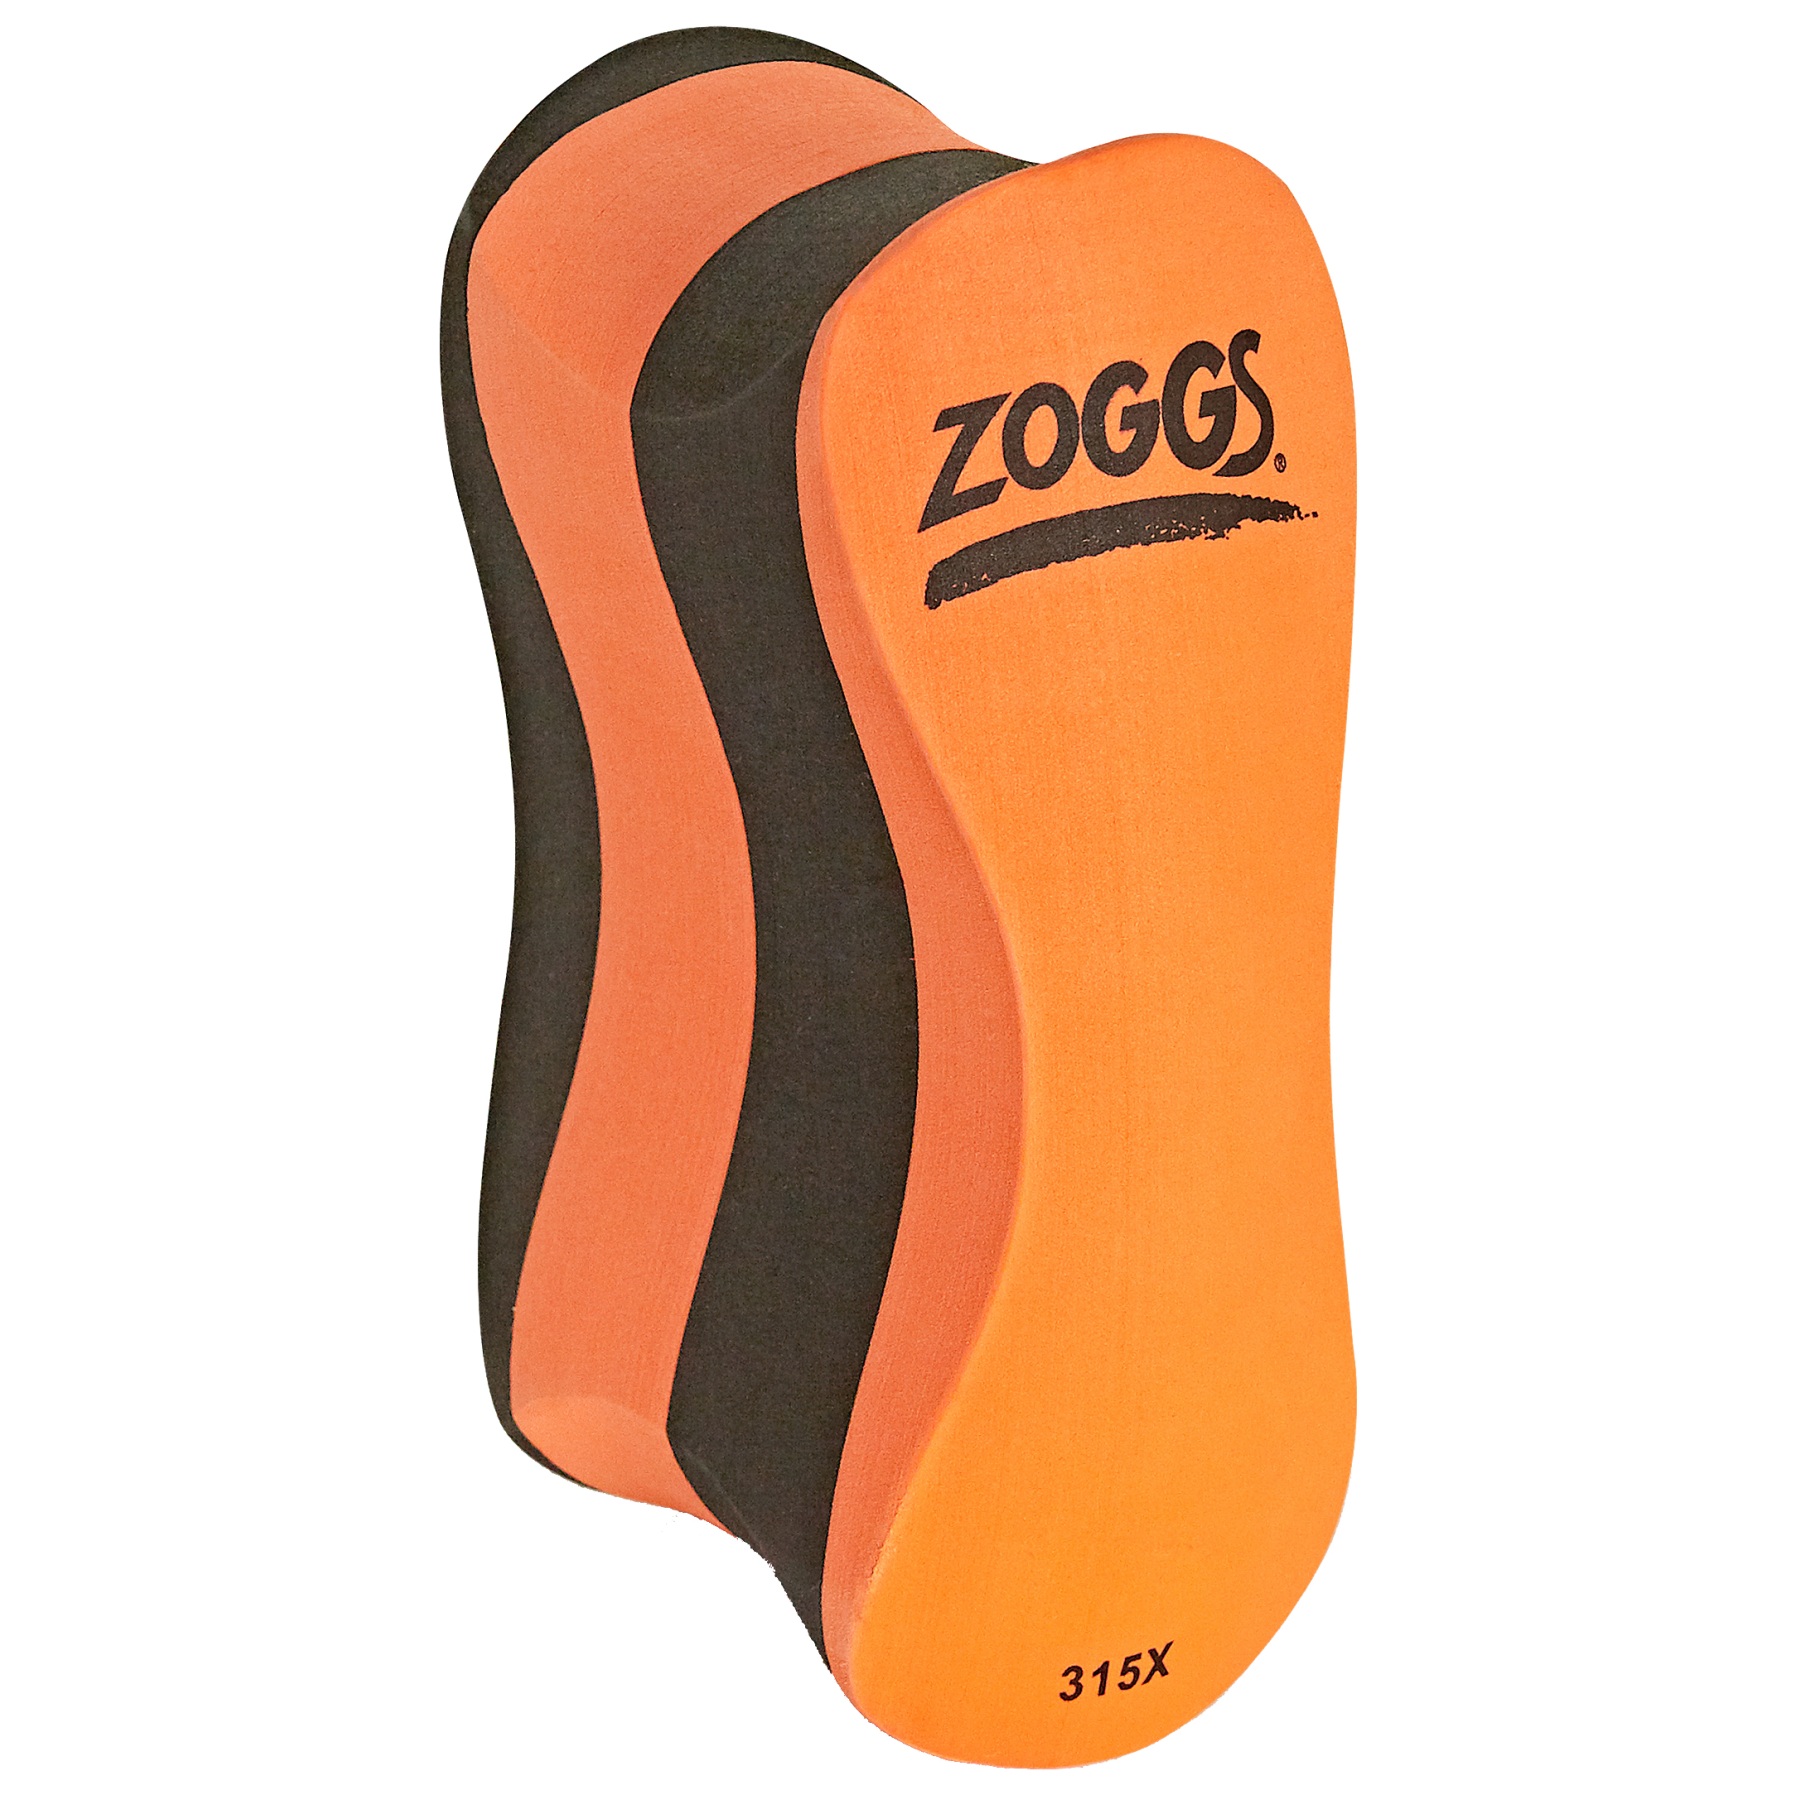 Produktbild von Zoggs Pull Buoy - orange